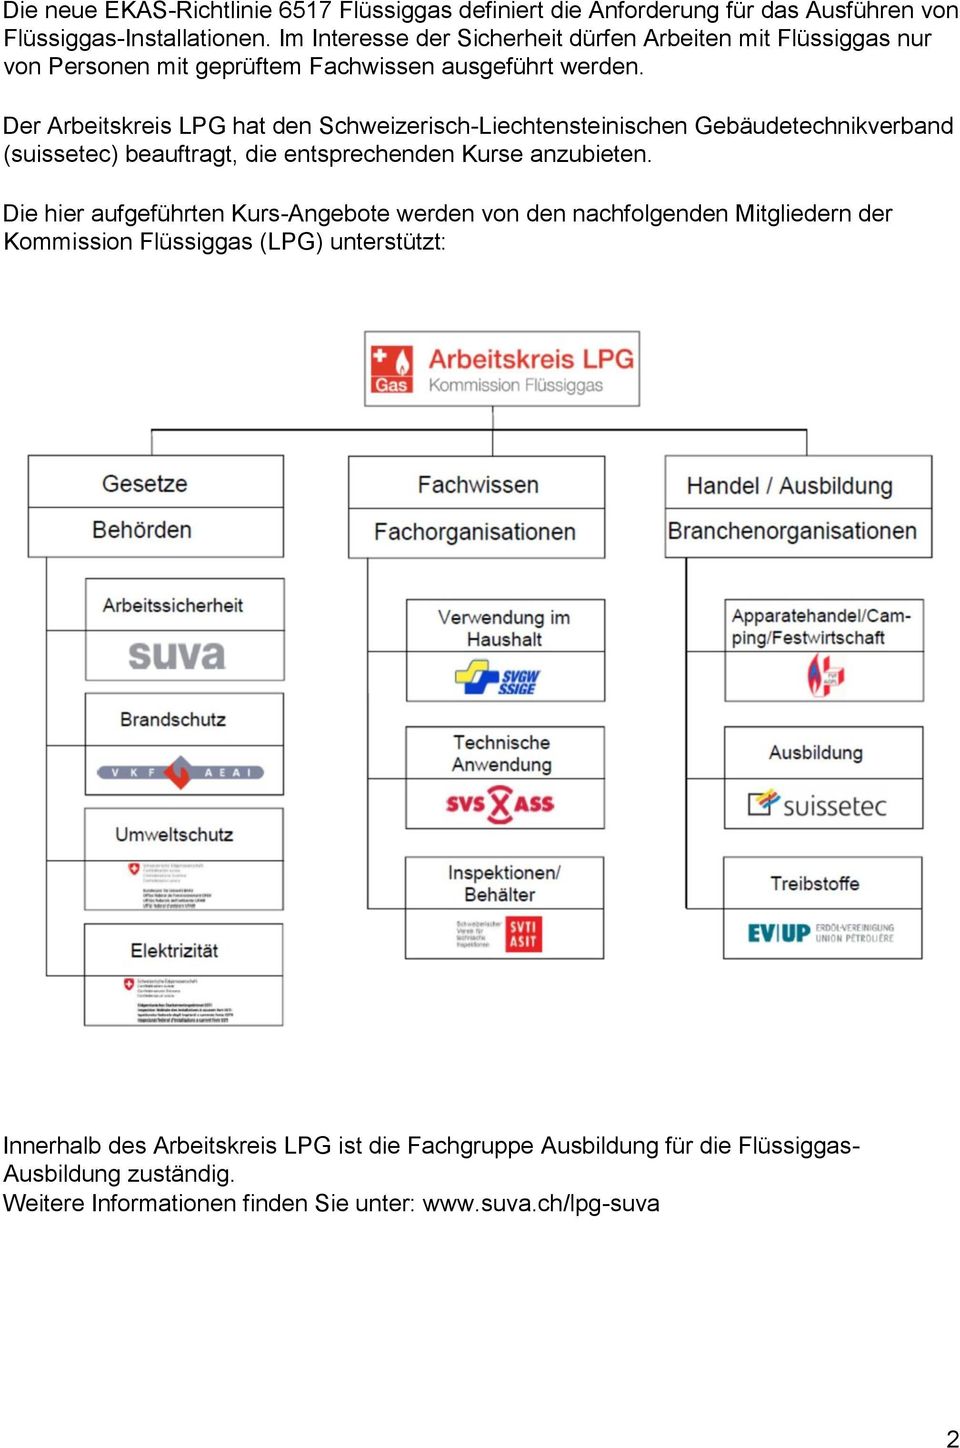 Der Arbeitskreis LPG hat den Schweizerisch-Liechtensteinischen Gebäudetechnikverband (suissetec) beauftragt, die entsprechenden Kurse anzubieten.